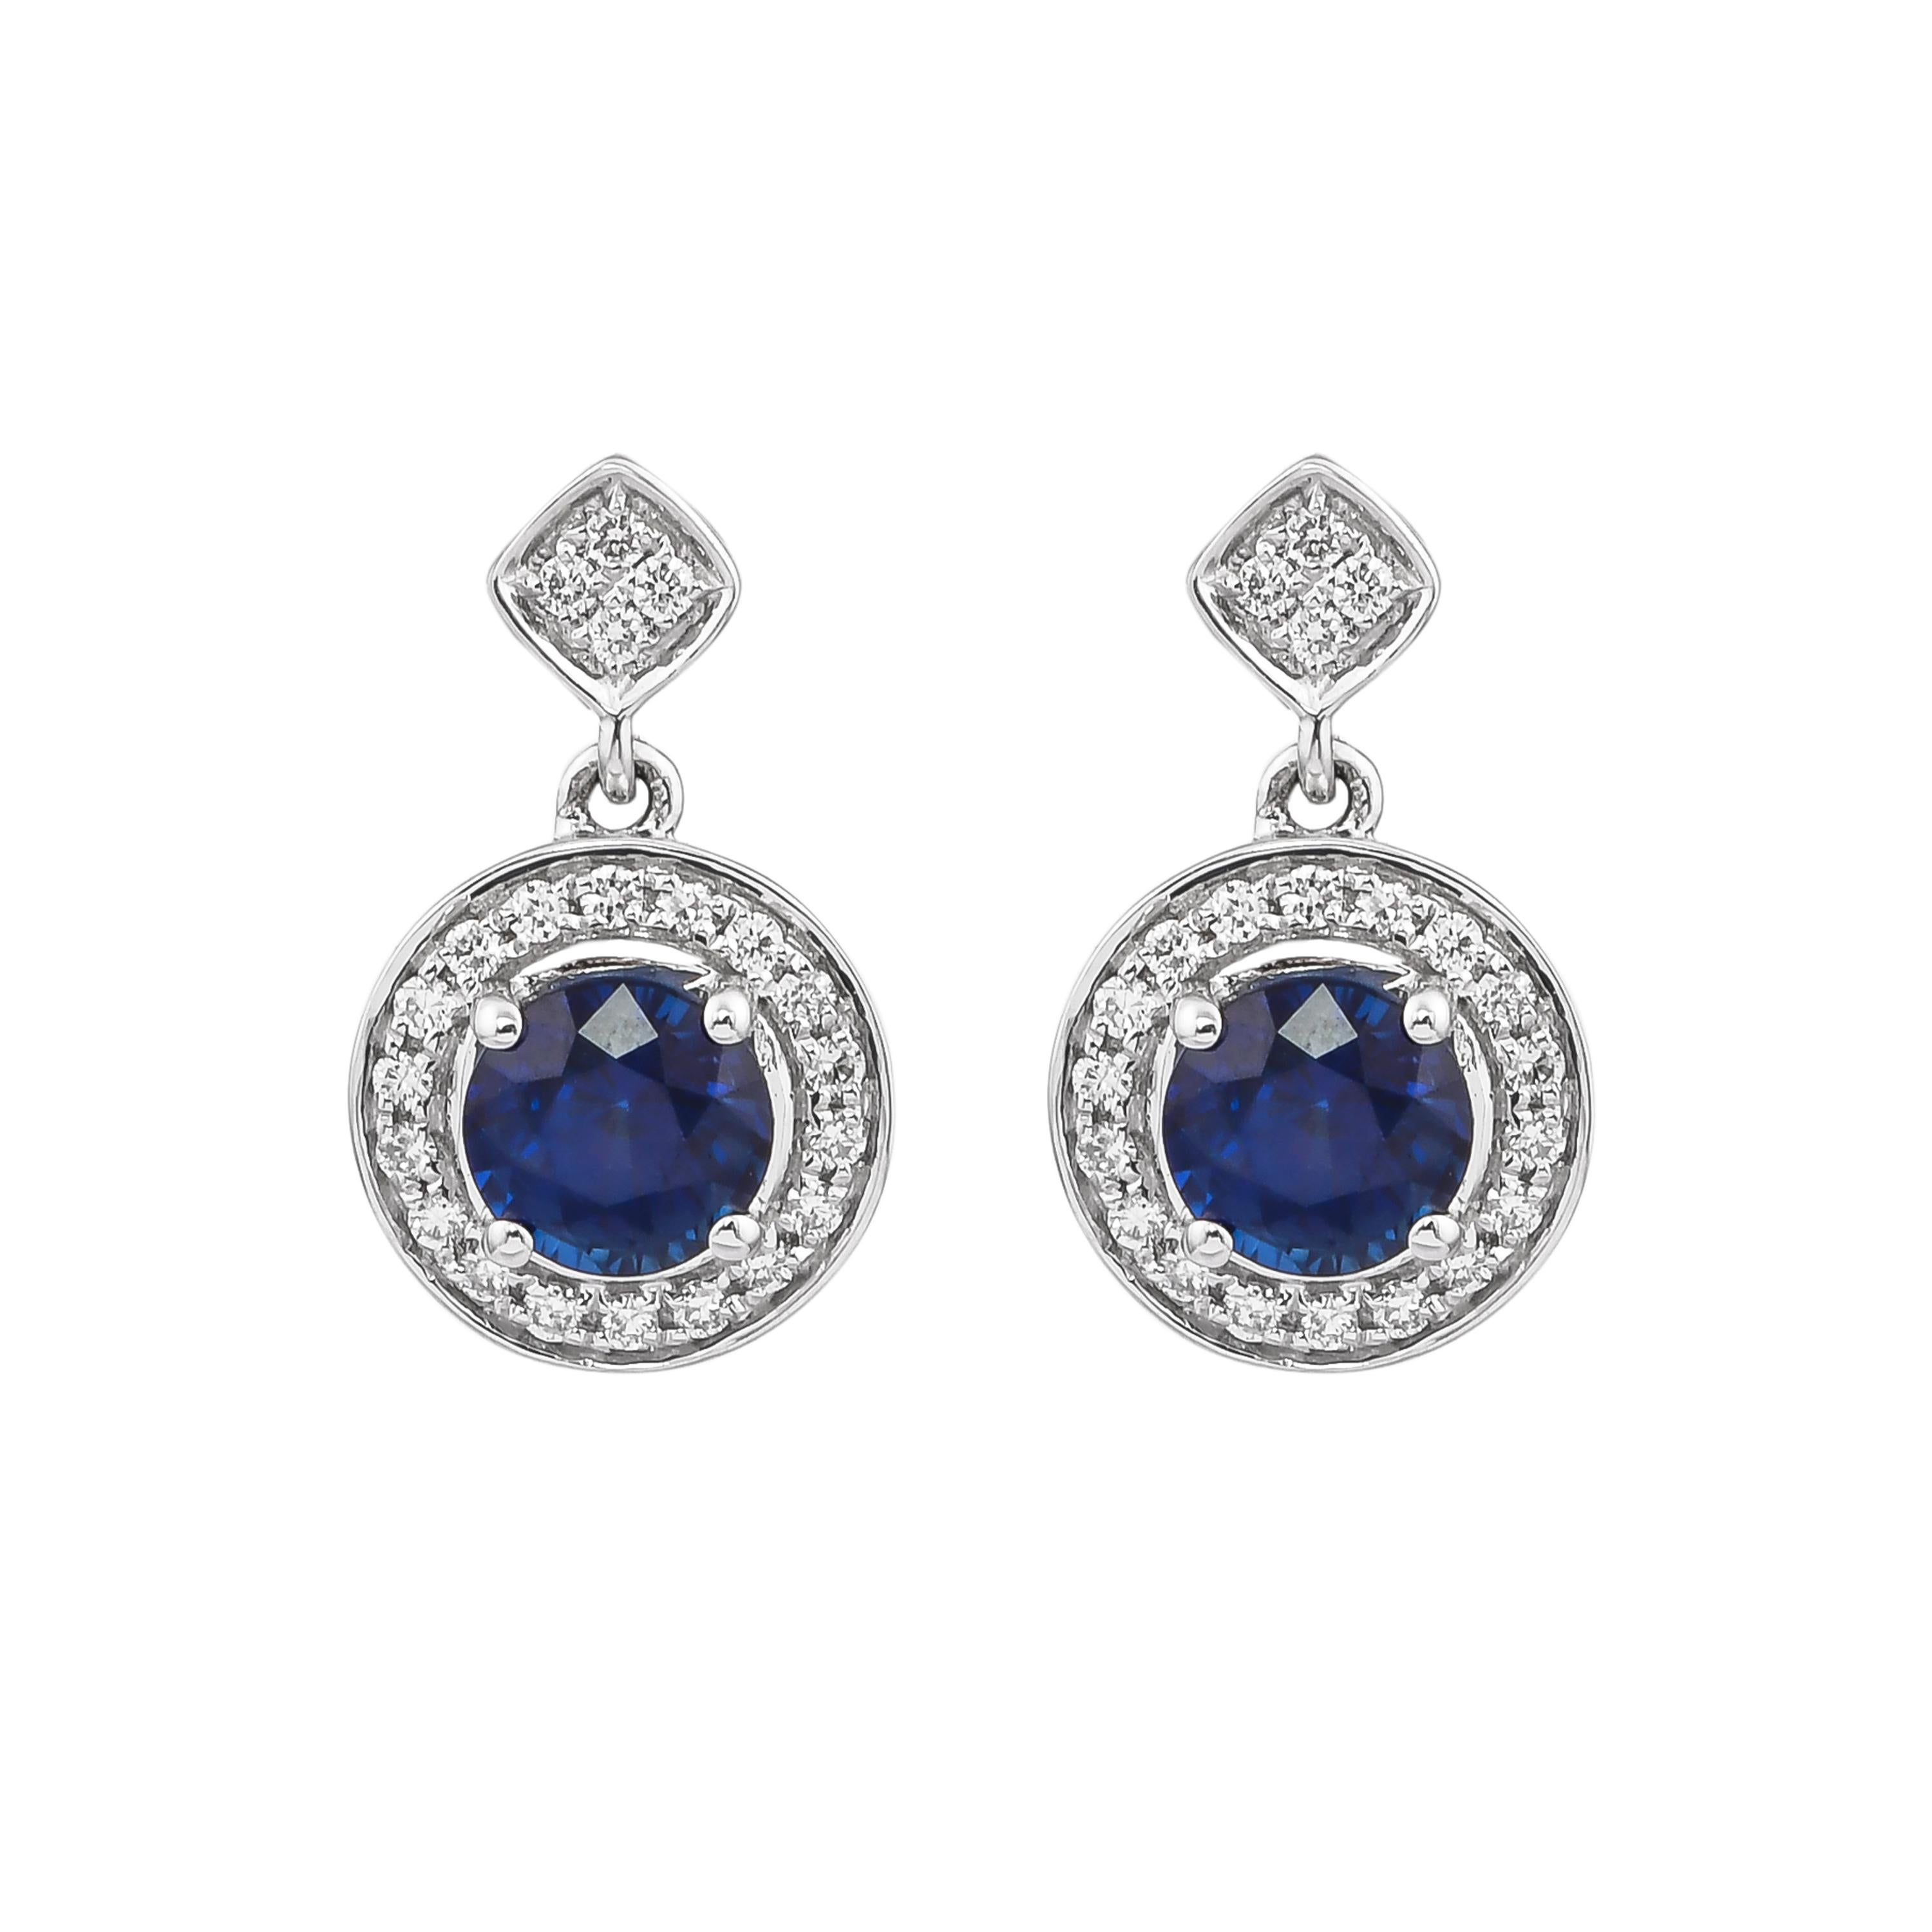 Diese Kollektion bietet eine zierliche Auswahl an Schmuckstücken mit blauen Saphiren und Diamanten. Diese blauen Saphire stammen aus Madagaskar und haben einen kräftigen blauen Farbton. Mit Diamanten akzentuiert, können diese minimalistischen Stücke